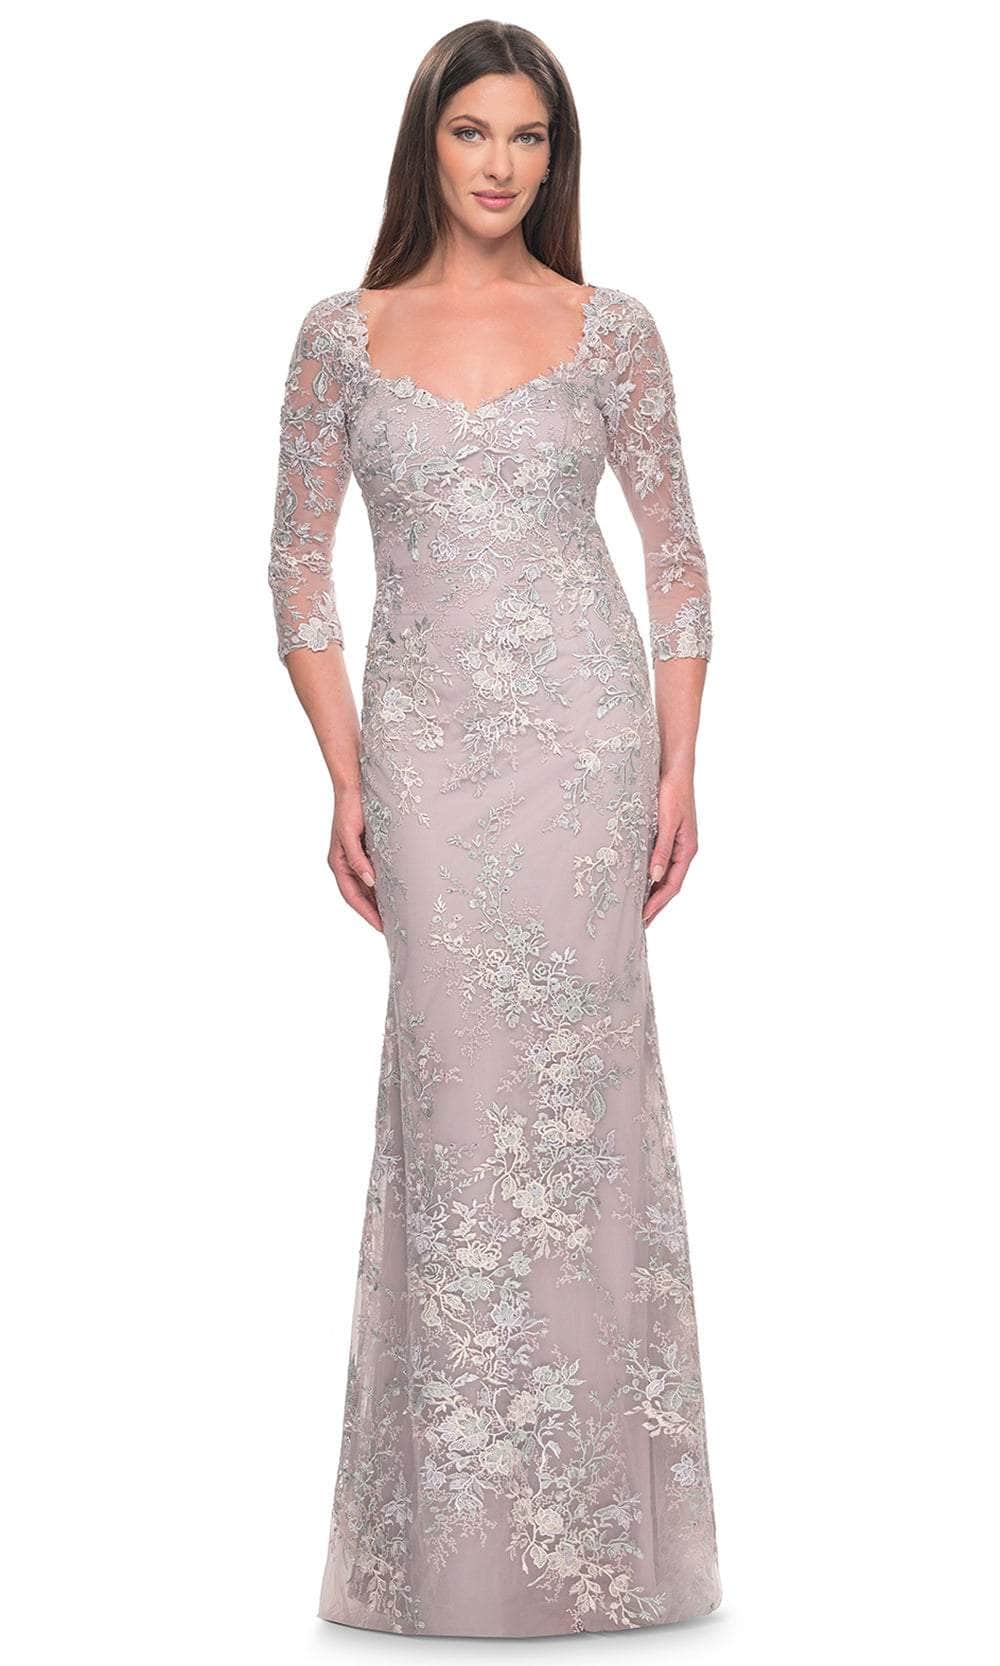 Image of La Femme 31804 - Embroidered Scoop Neck Evening Dress